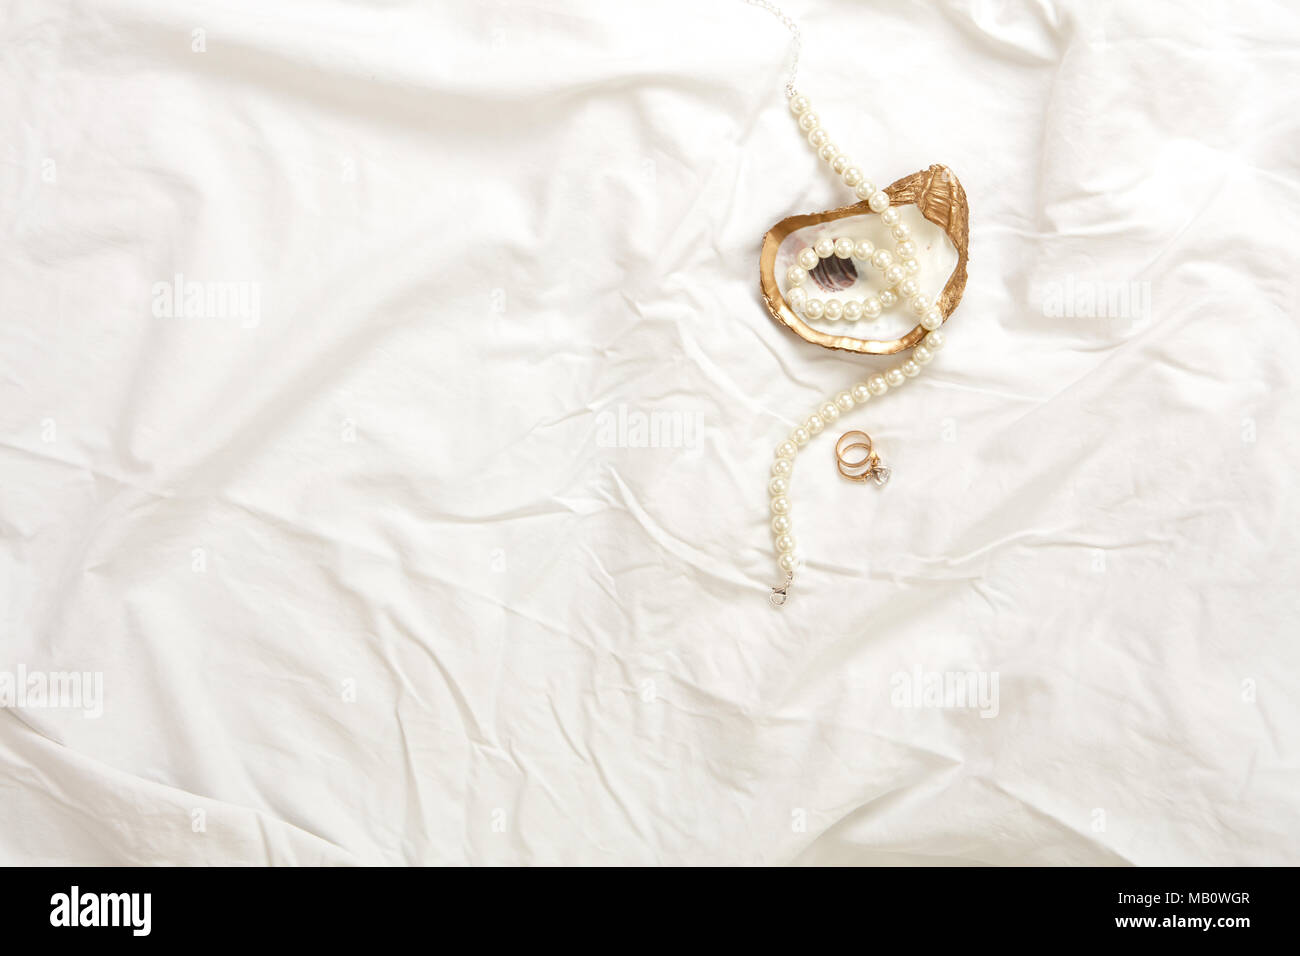 Gold oyster Schmuck Gericht mit Perlenkette und gold Engagement Ring und gold Hochzeit Band auf einem weißen Stoff Hintergrund Stockfoto